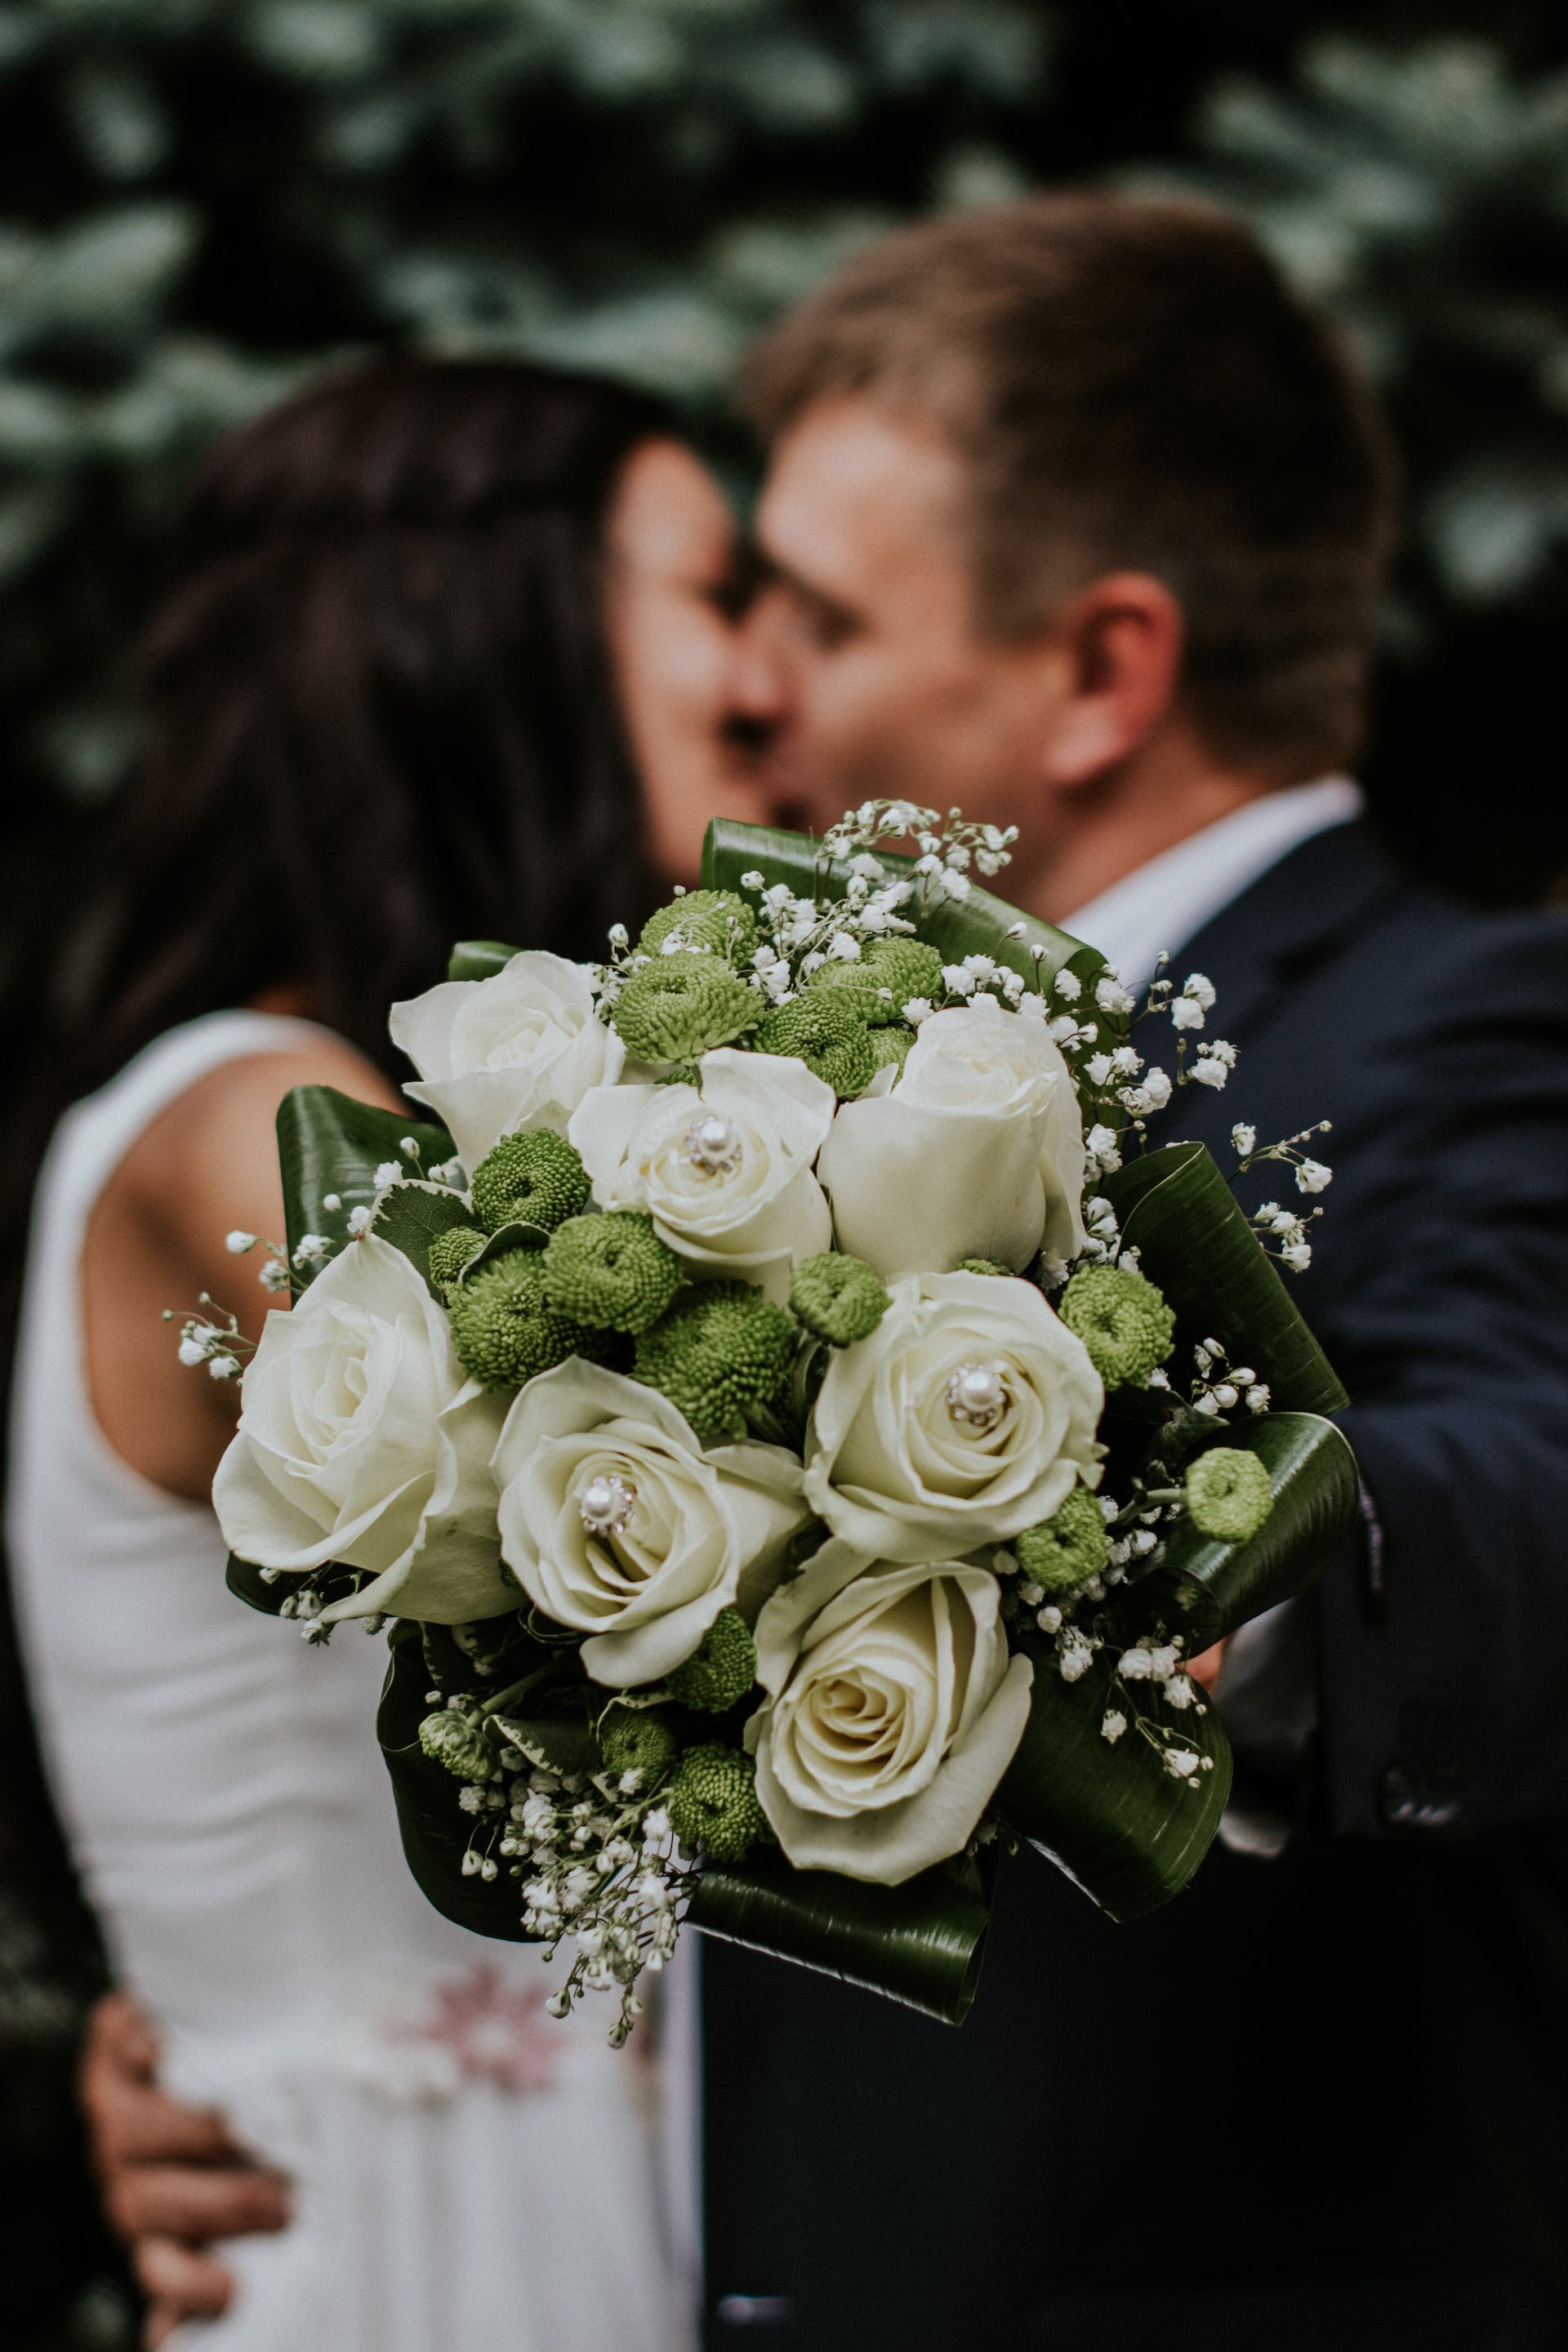 Bride and groom kissing | Source: Pexels